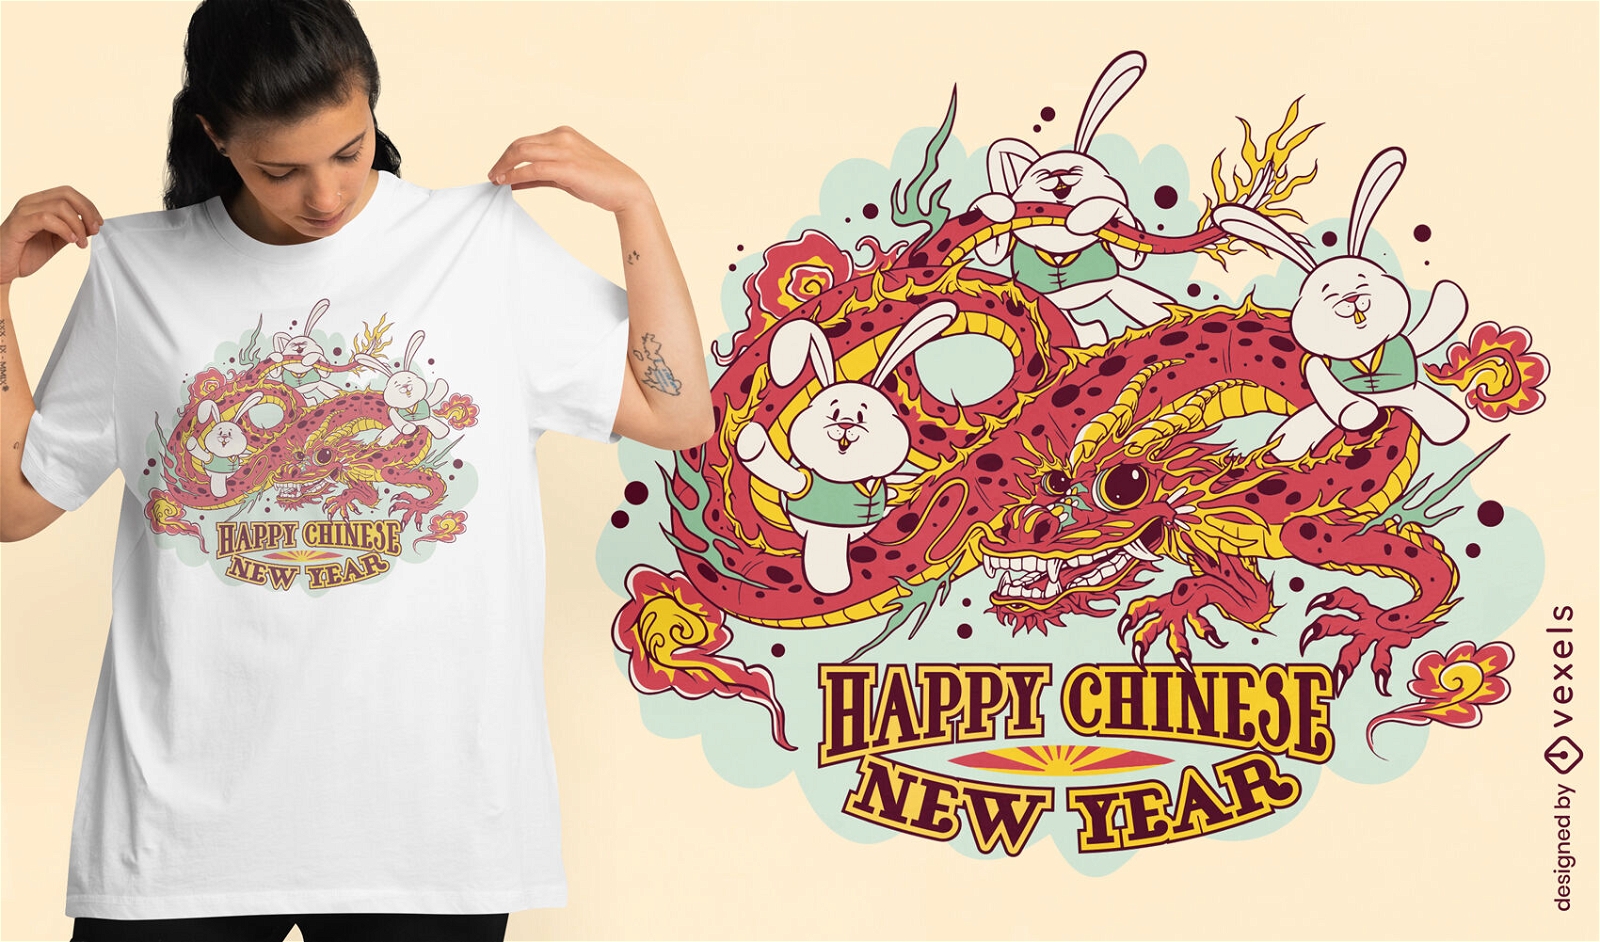 Coelhinhos do ano novo chin?s no design da camiseta do drag?o